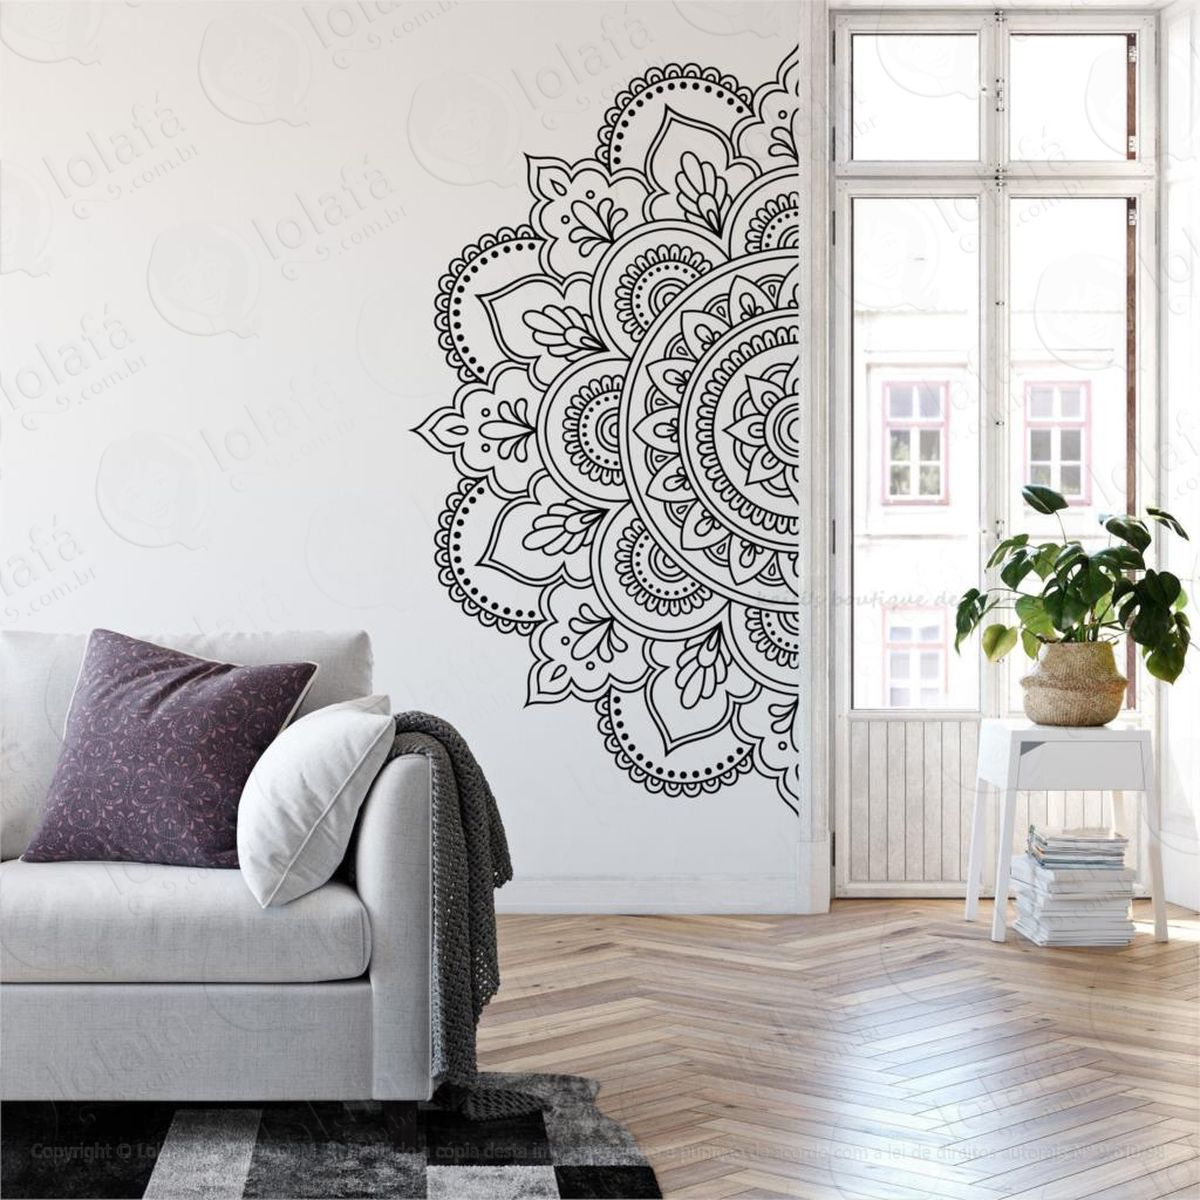 mandala das boas escolhas adesivo de parede decorativo para casa, quarto, sala e vidro - mod:257